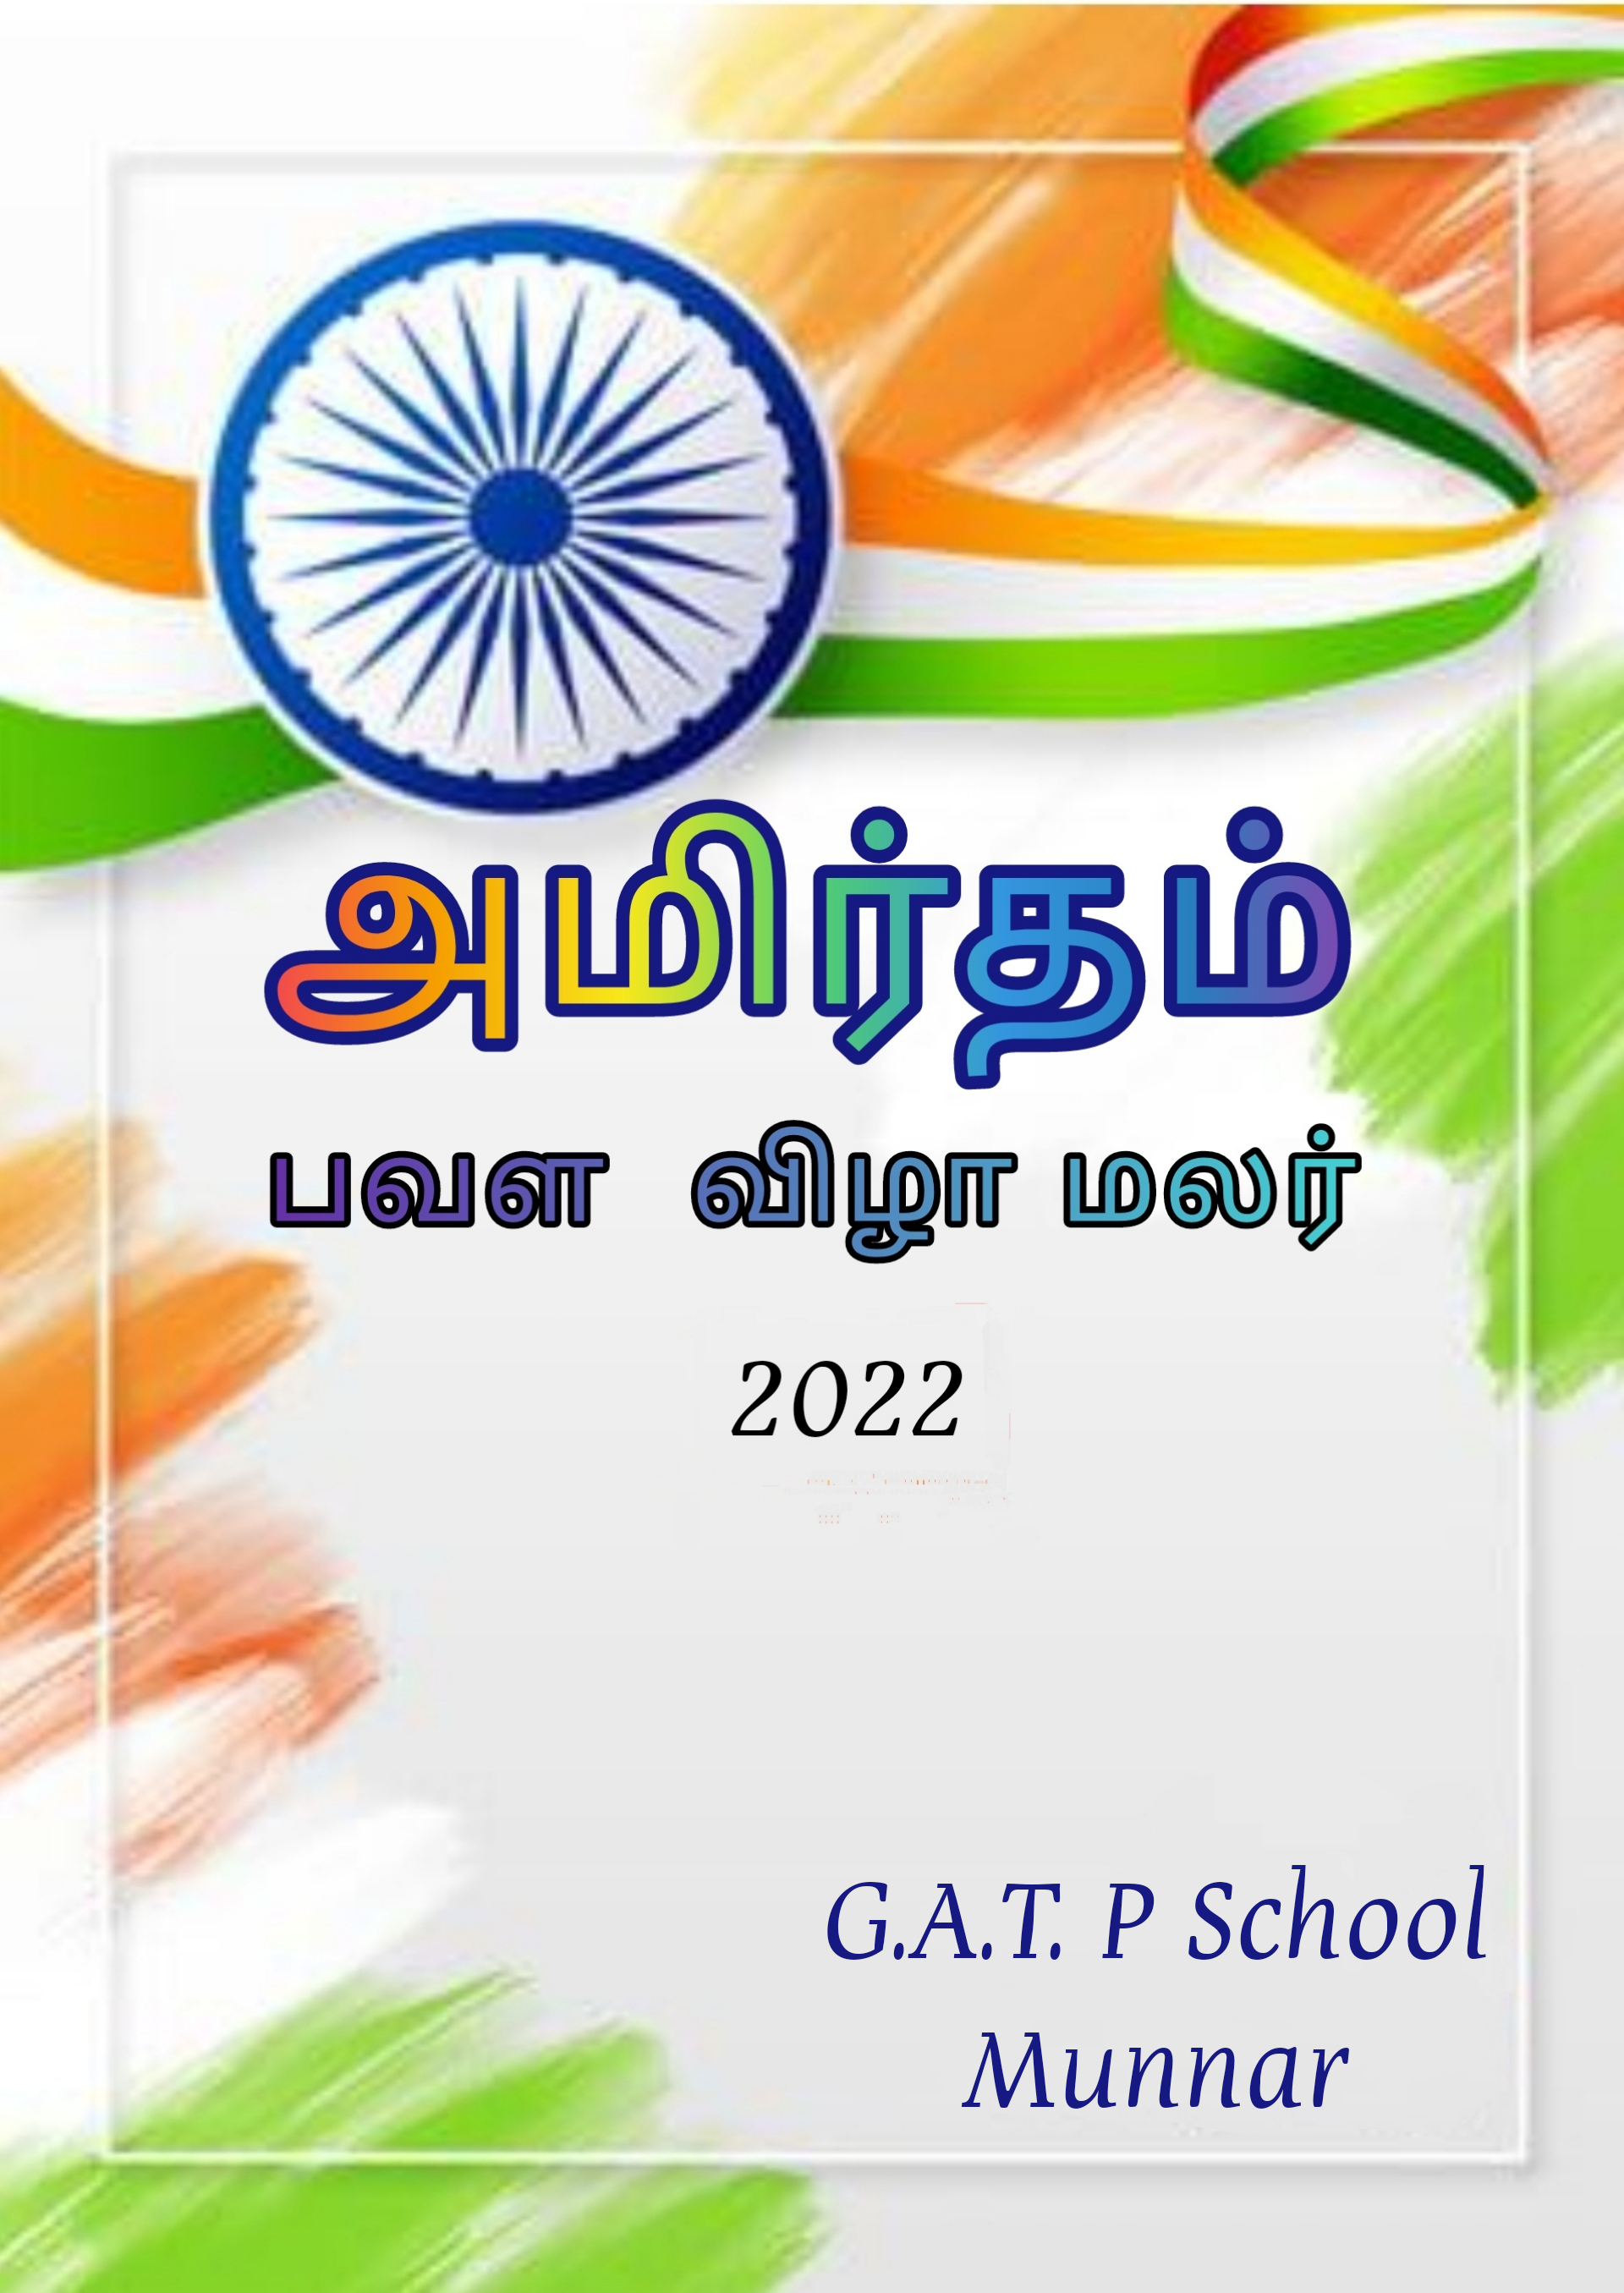 GATP School Munnar